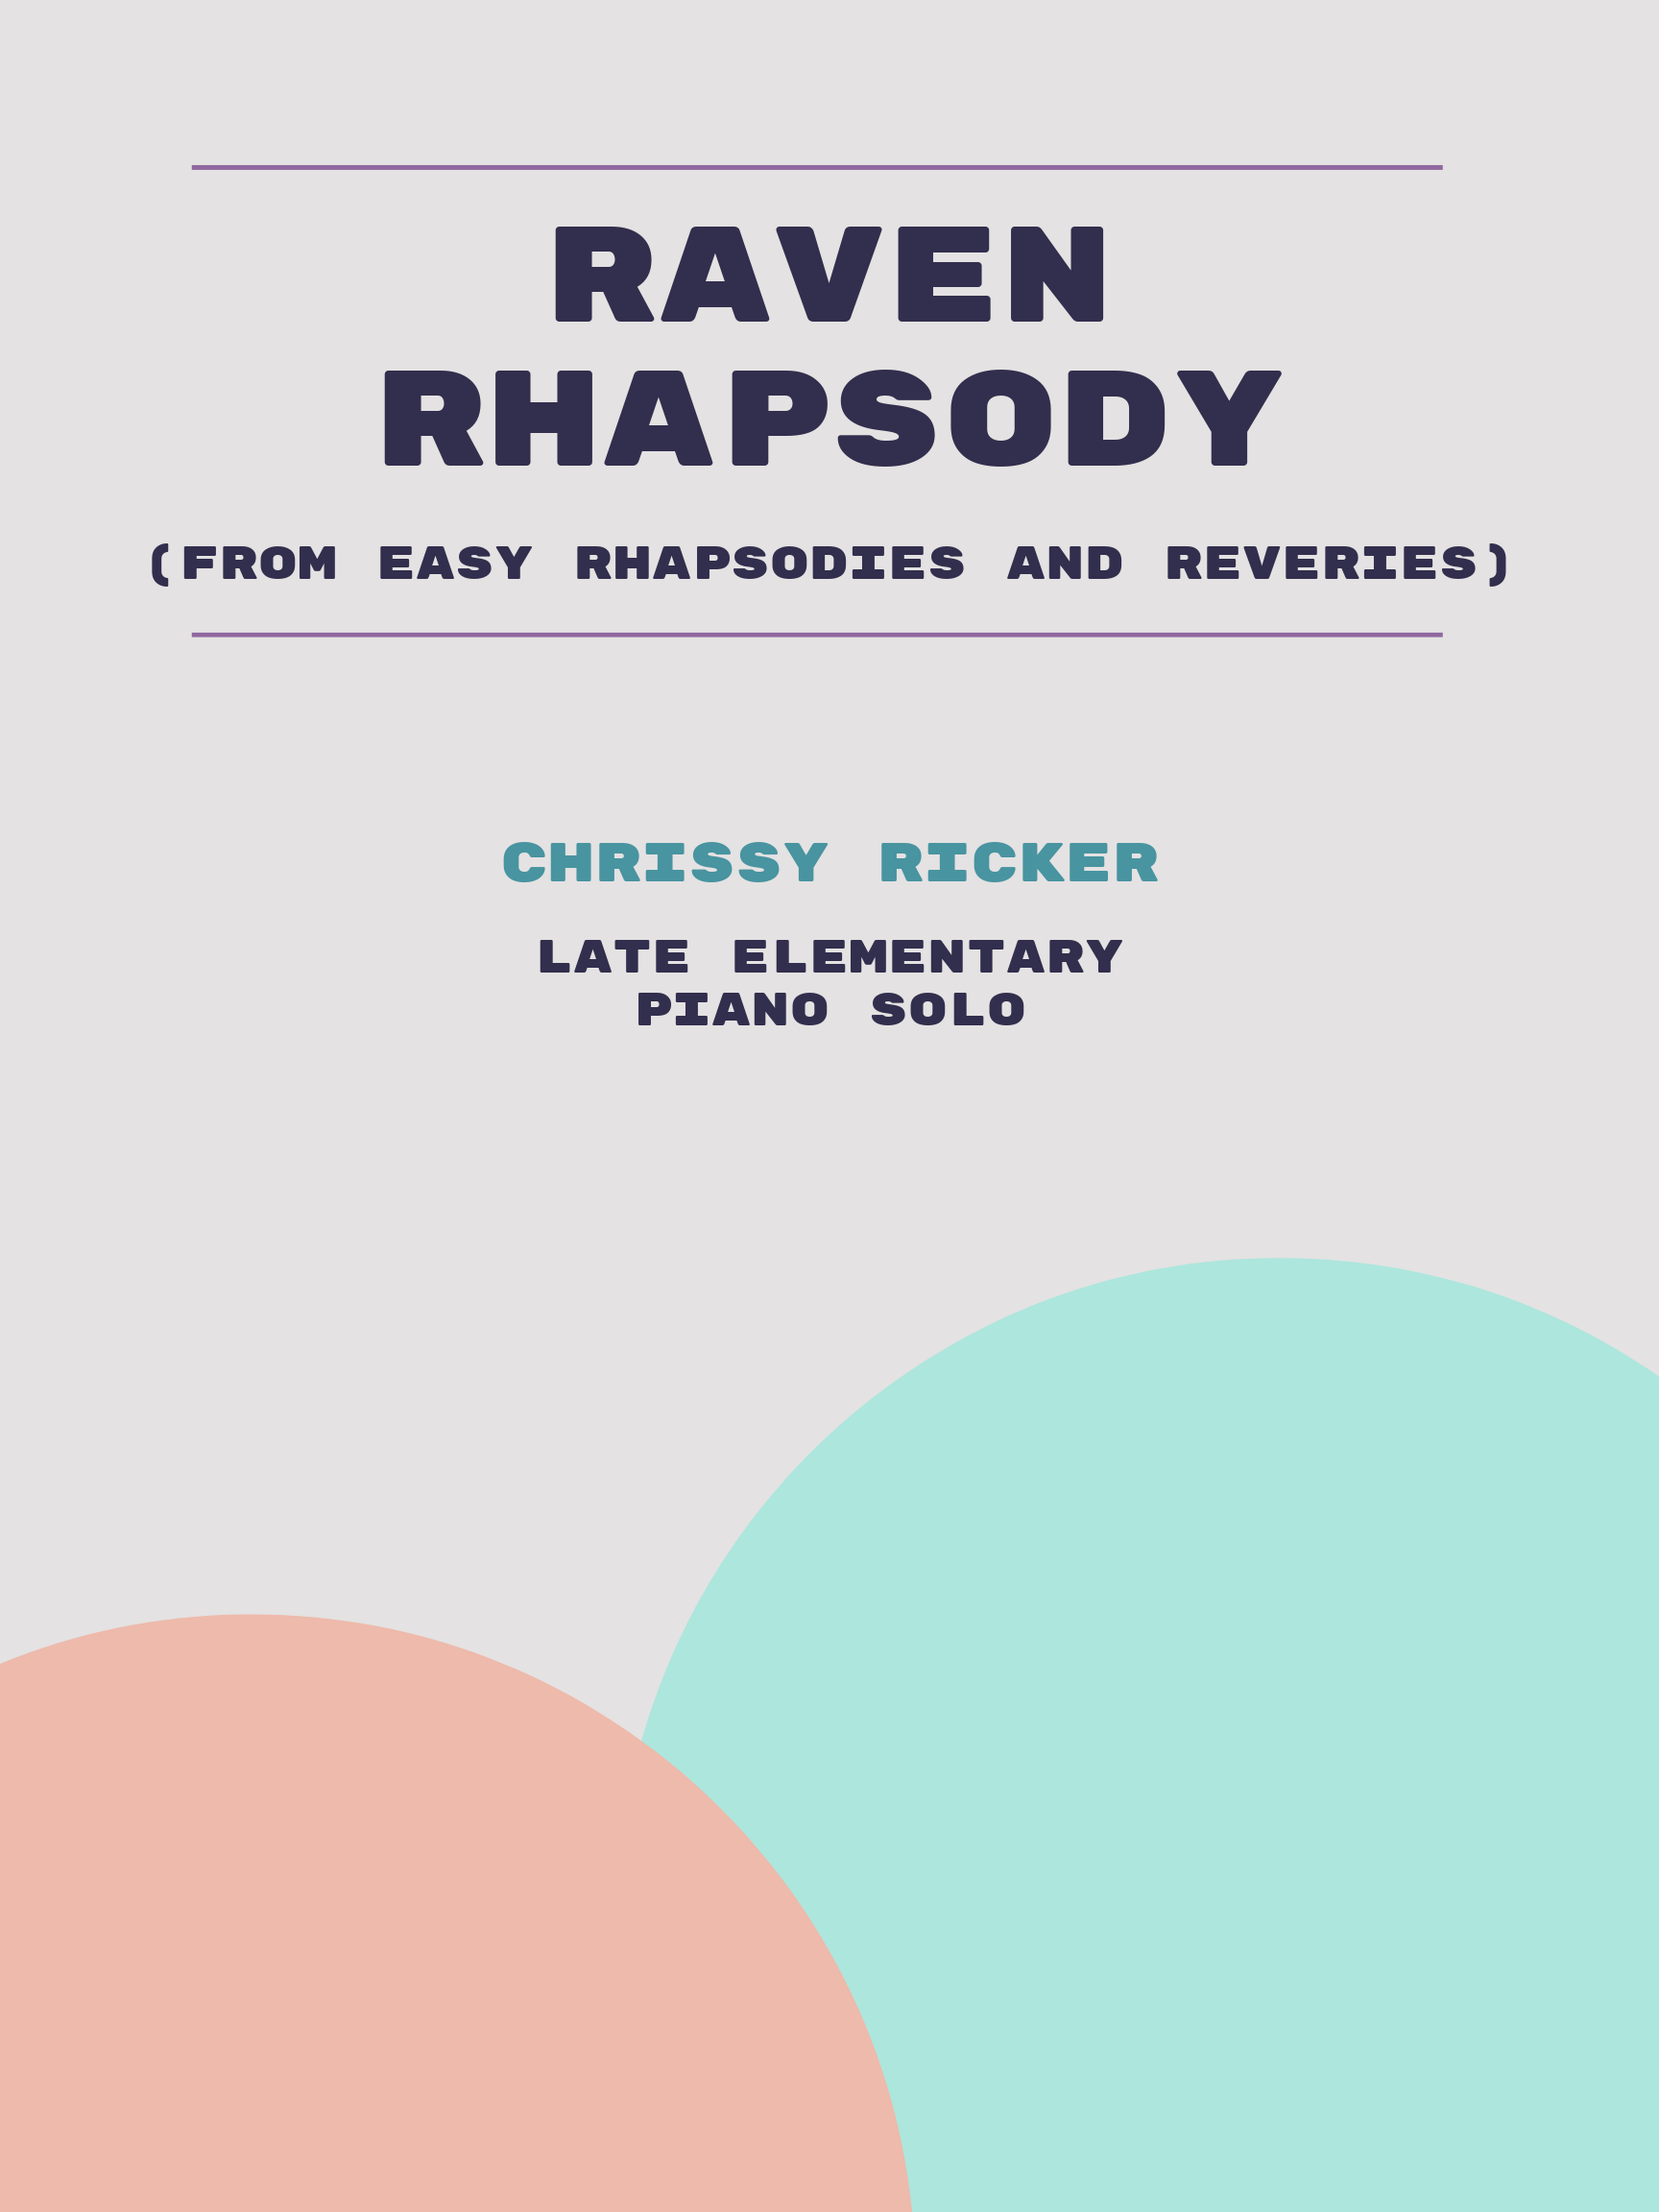 Raven Rhapsody by Chrissy Ricker